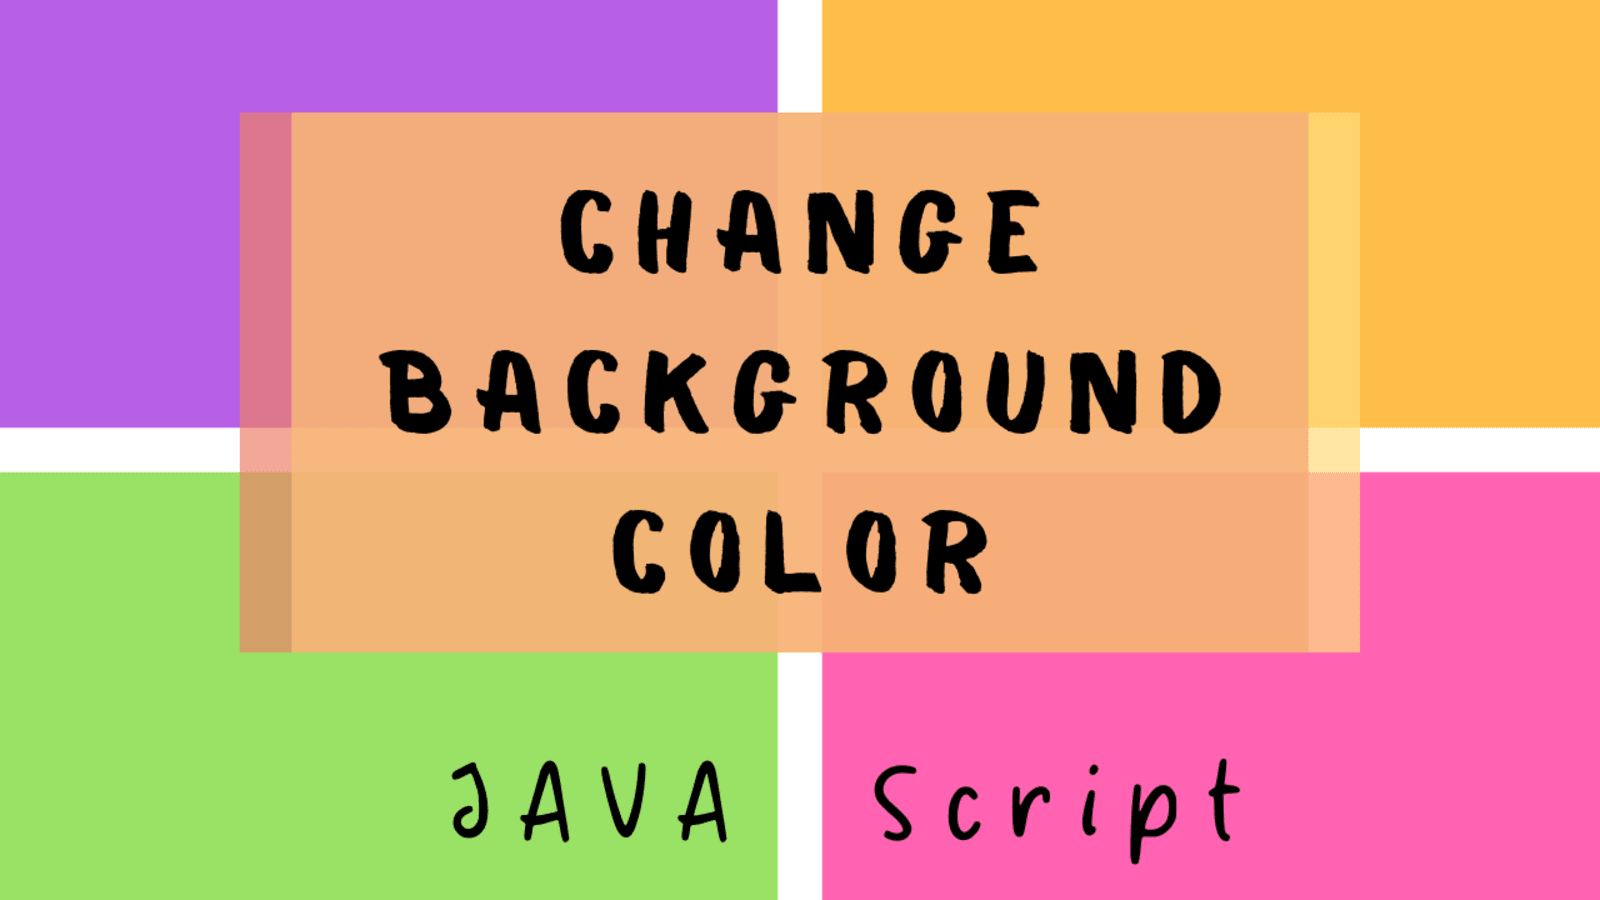 Có rất nhiều cách để thay đổi màu nền trang web của bạn. Hãy xem hình ảnh liên quan để tìm hiểu về cách dùng JavaScript, HTML và CSS để tạo màu nền theo ý muốn của bạn và tối ưu hóa trang web của mình.